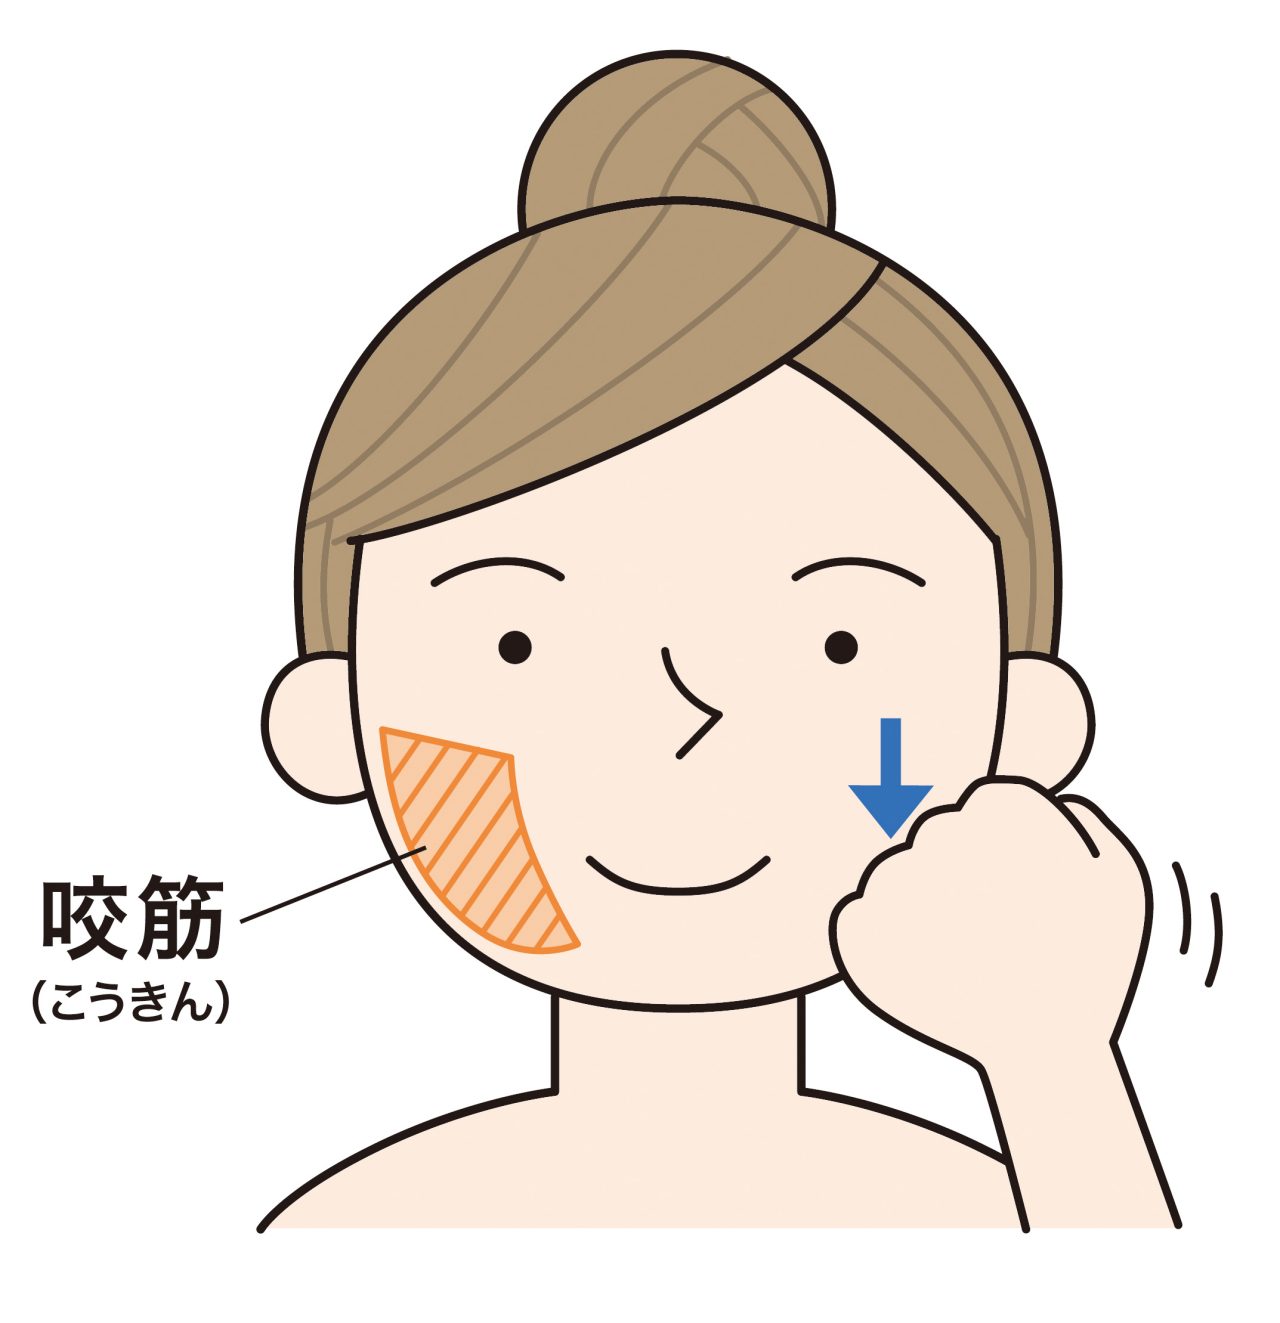 口周りを緩める咬筋マッサージ。げんこつを作り第1関節と第2関節の間を使って、あご骨の下から顎先に向けてなで下ろす。